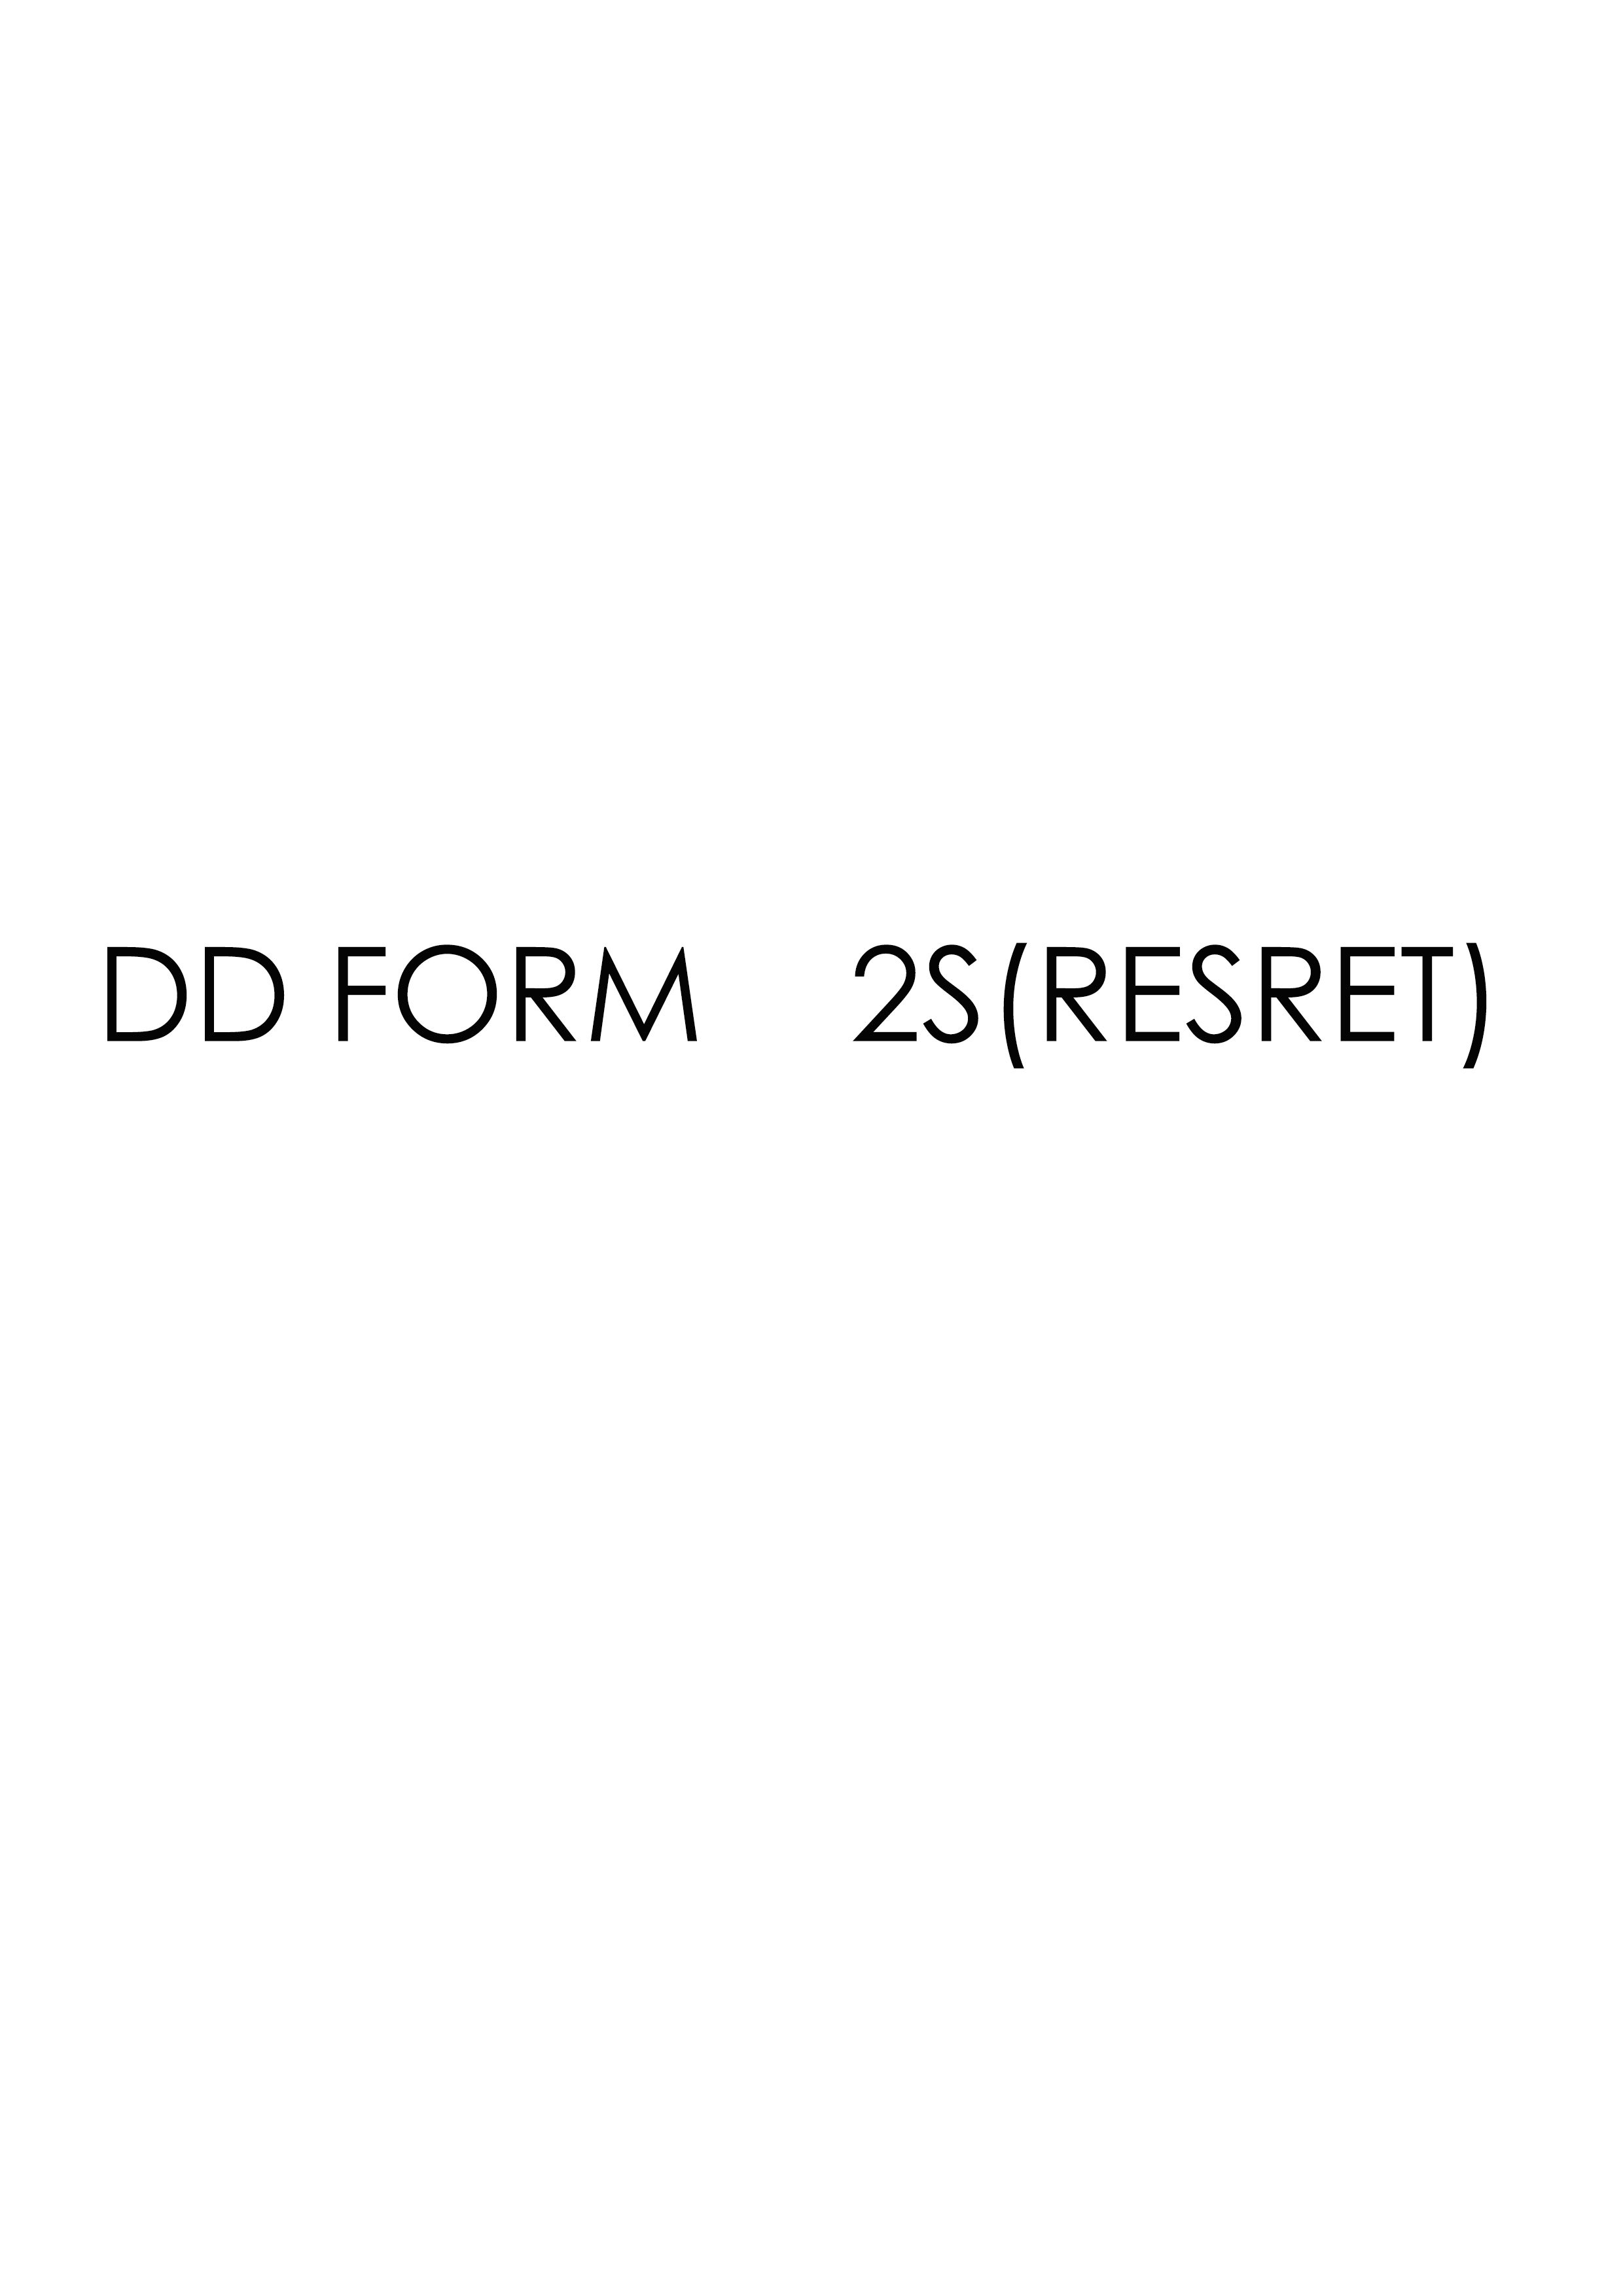 Download dd form 2S(RESRET)